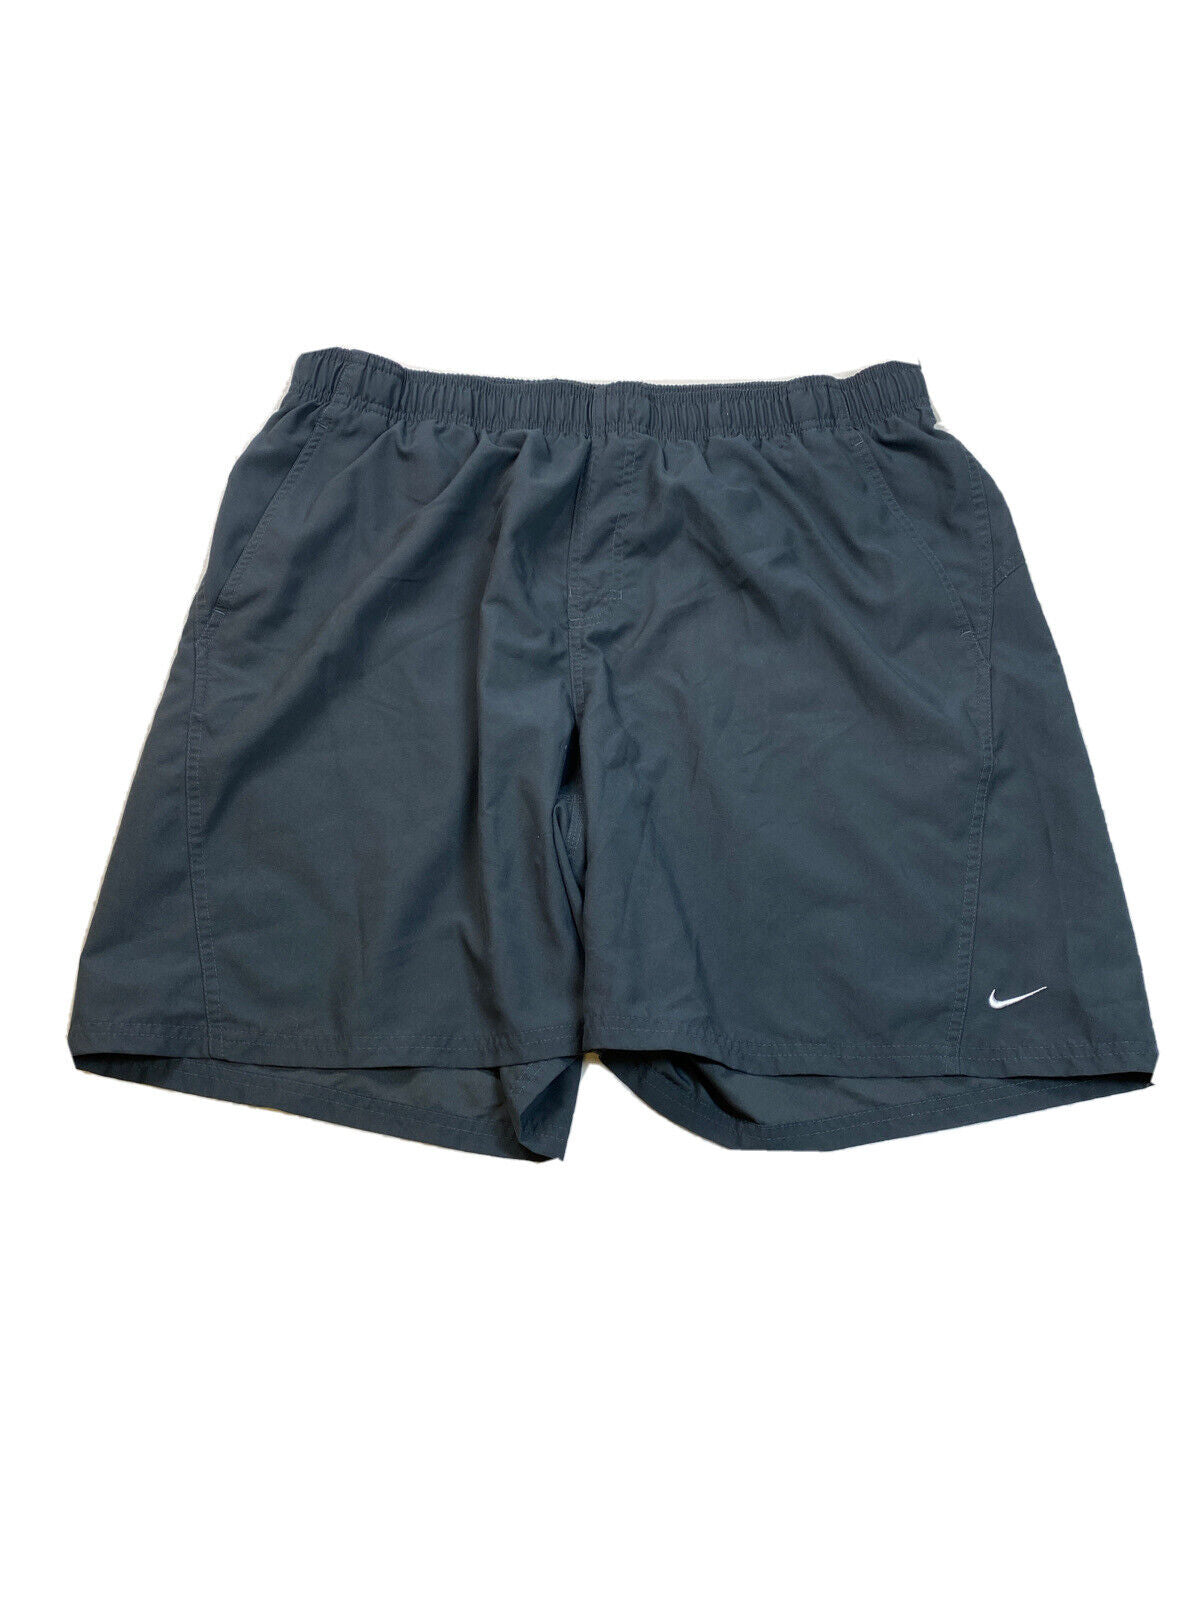 Nike Bañador gris sin forro con cintura elástica para hombre - XXL